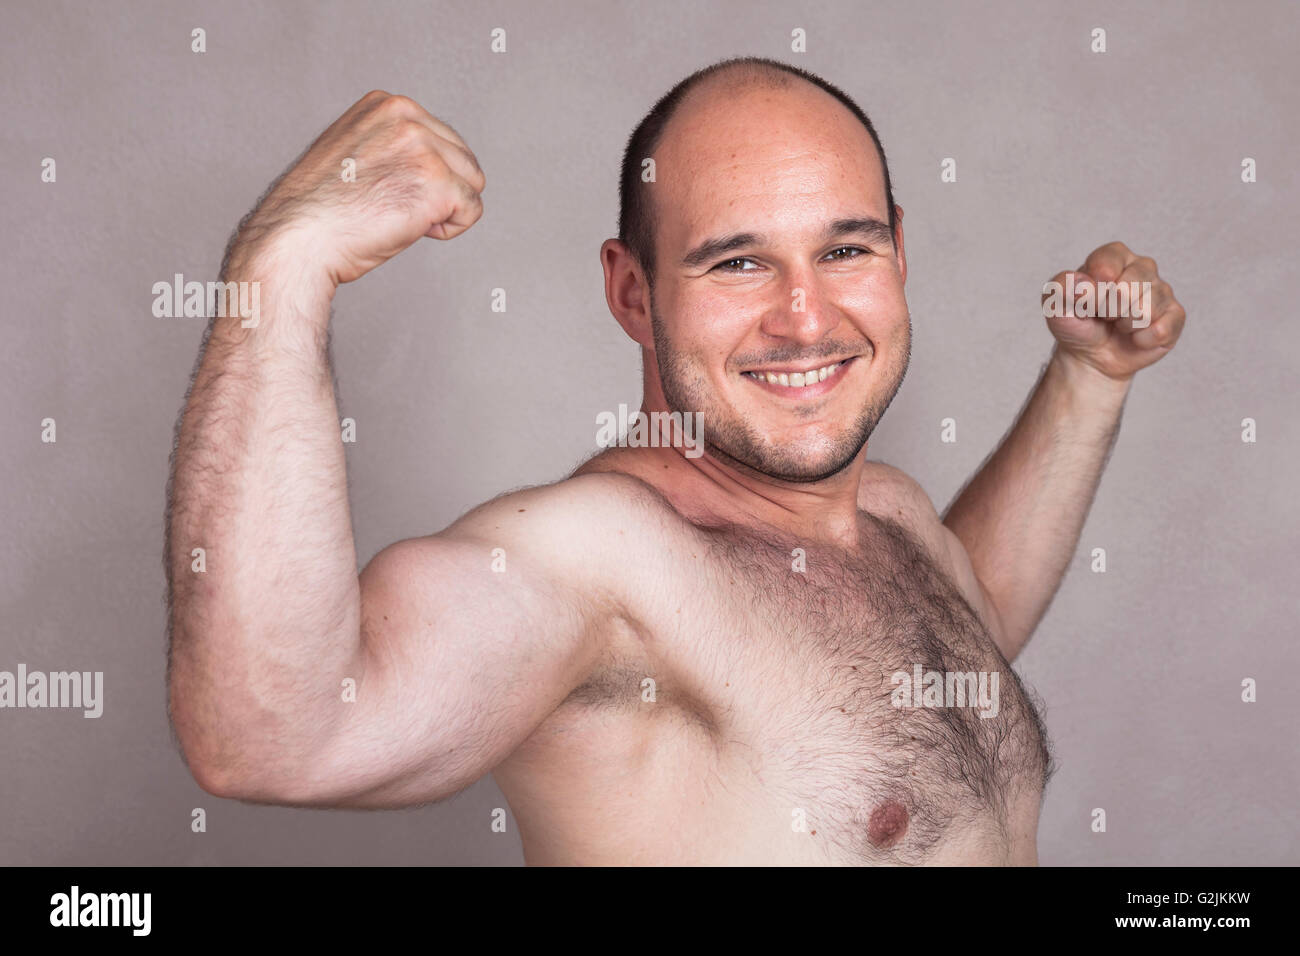 Nahaufnahme von nacktem Oberkörper glücklich mit seinen starken Armen und Muskeln. Stockfoto